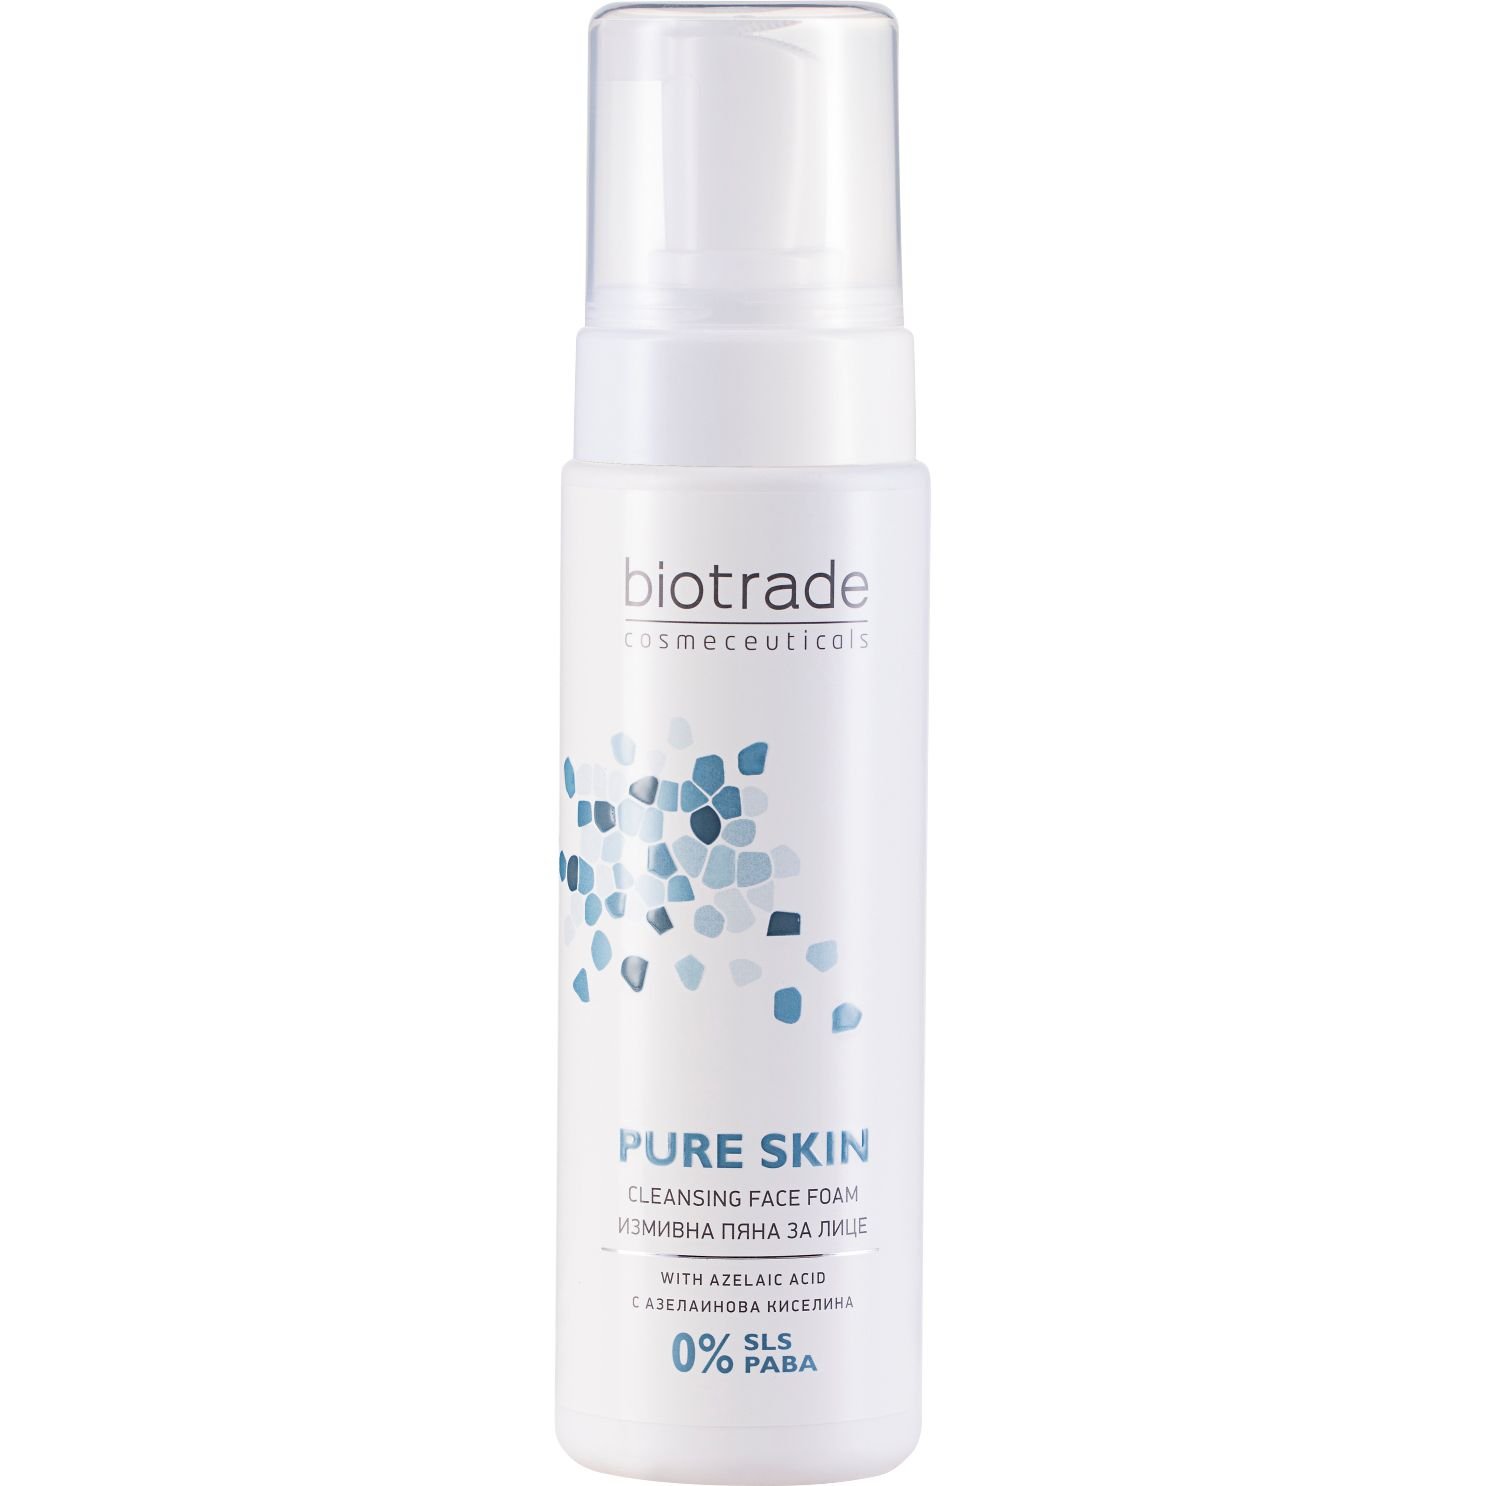 Пенка очищающая Biotrade Pure Skin для кожи с расширенными порами 150 мл (3800221841300) - фото 1